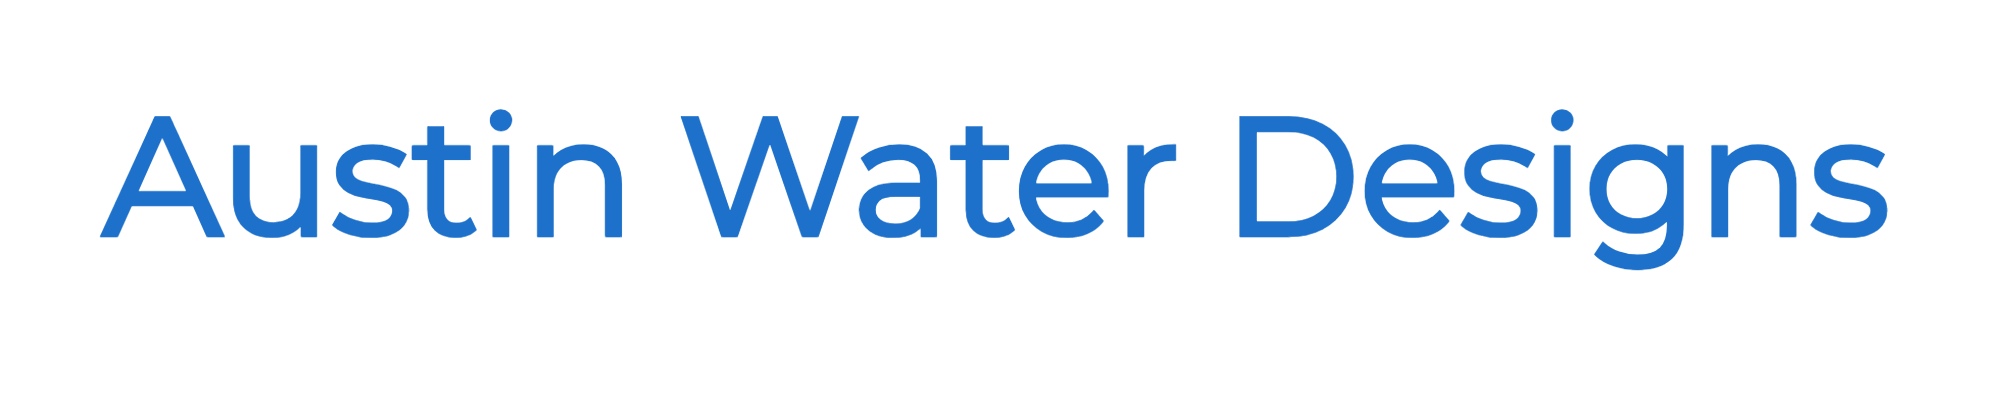 Austin Water Designs